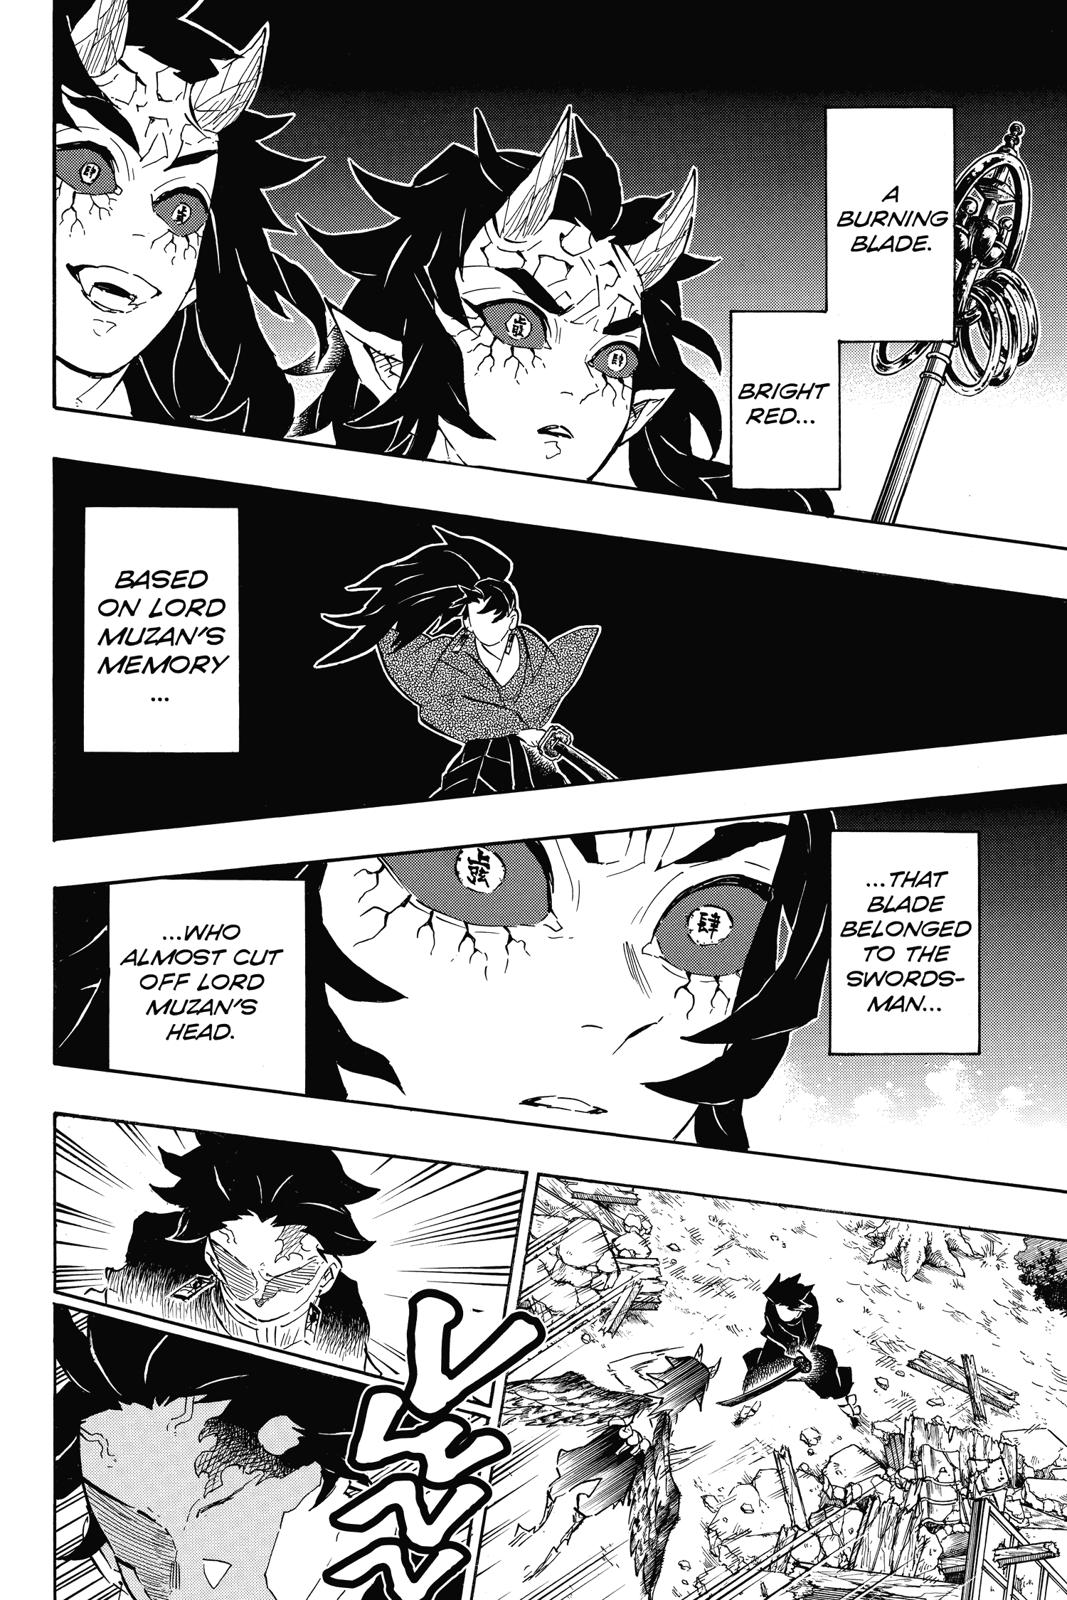 Demon Slayer Manga Manga Chapter - 113 - image 6